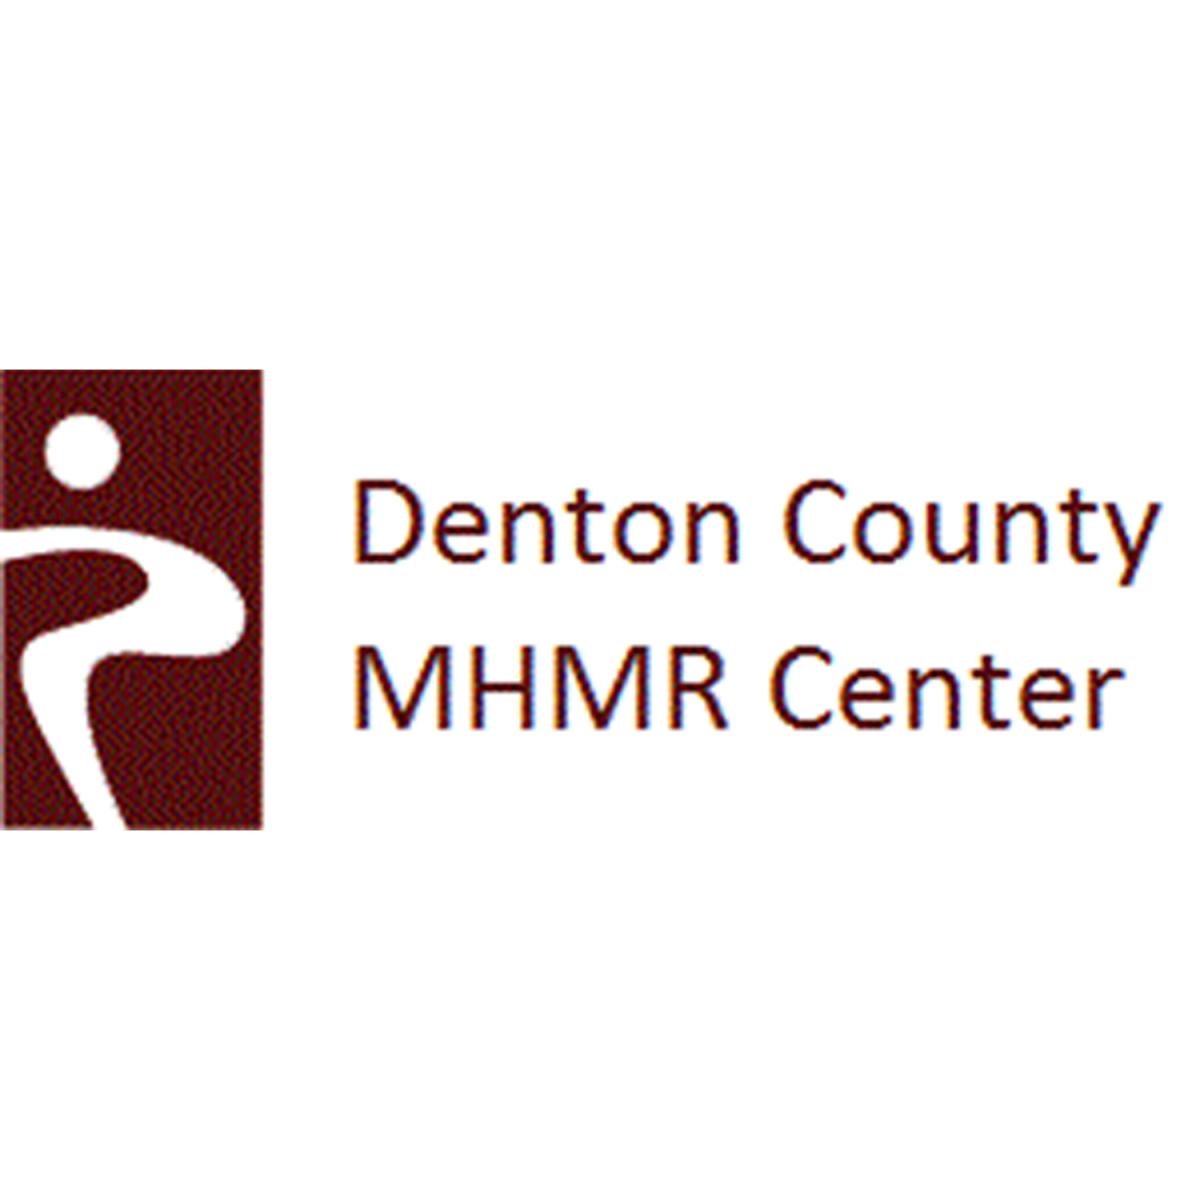 Denton County MHMR